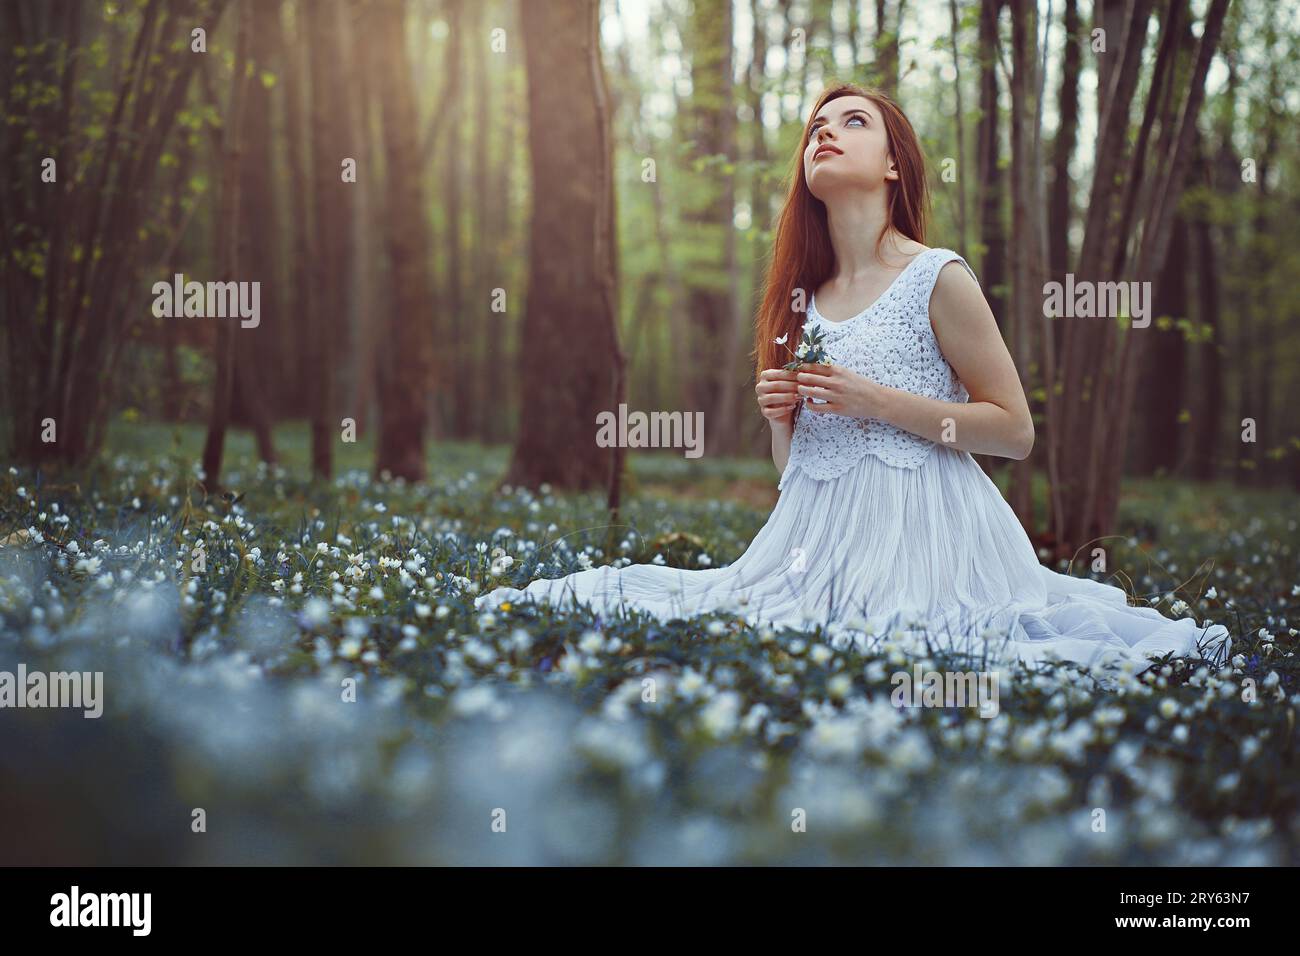 Romantische Frau auf einer Wiese voller weißer Blumen Stockfoto